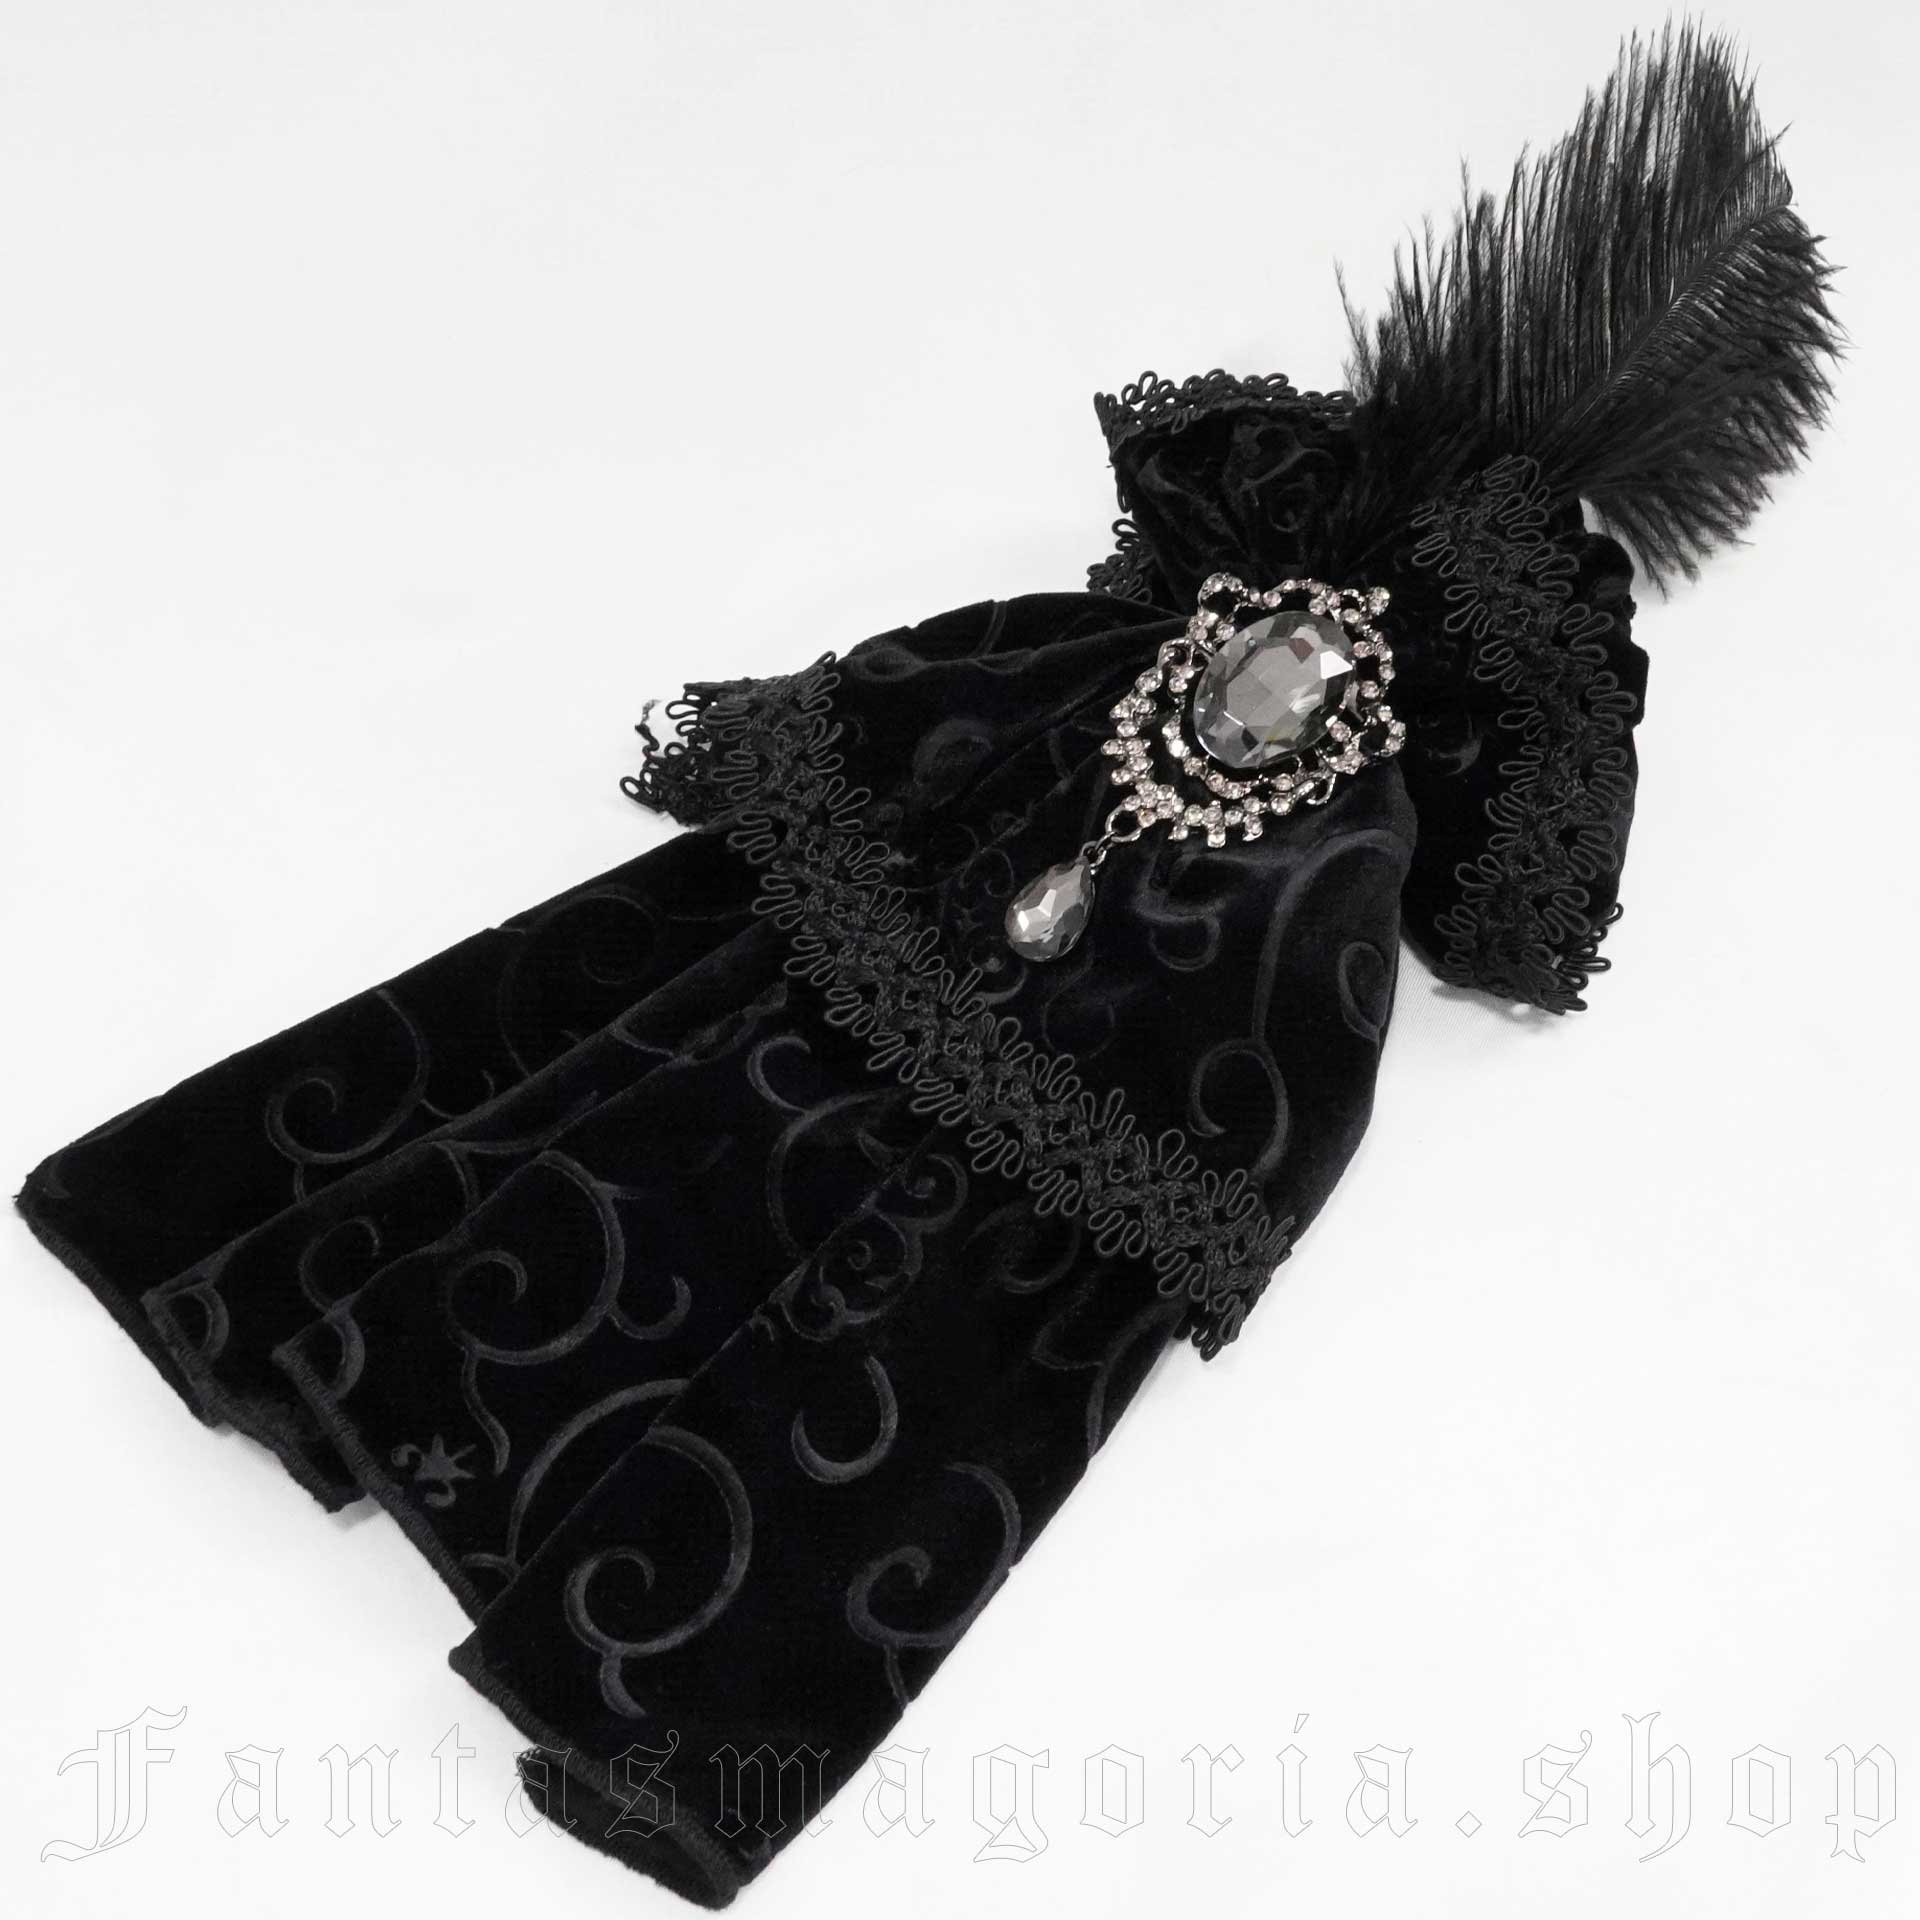 Black Swan Jabot - Devil Fashion - AS072 1